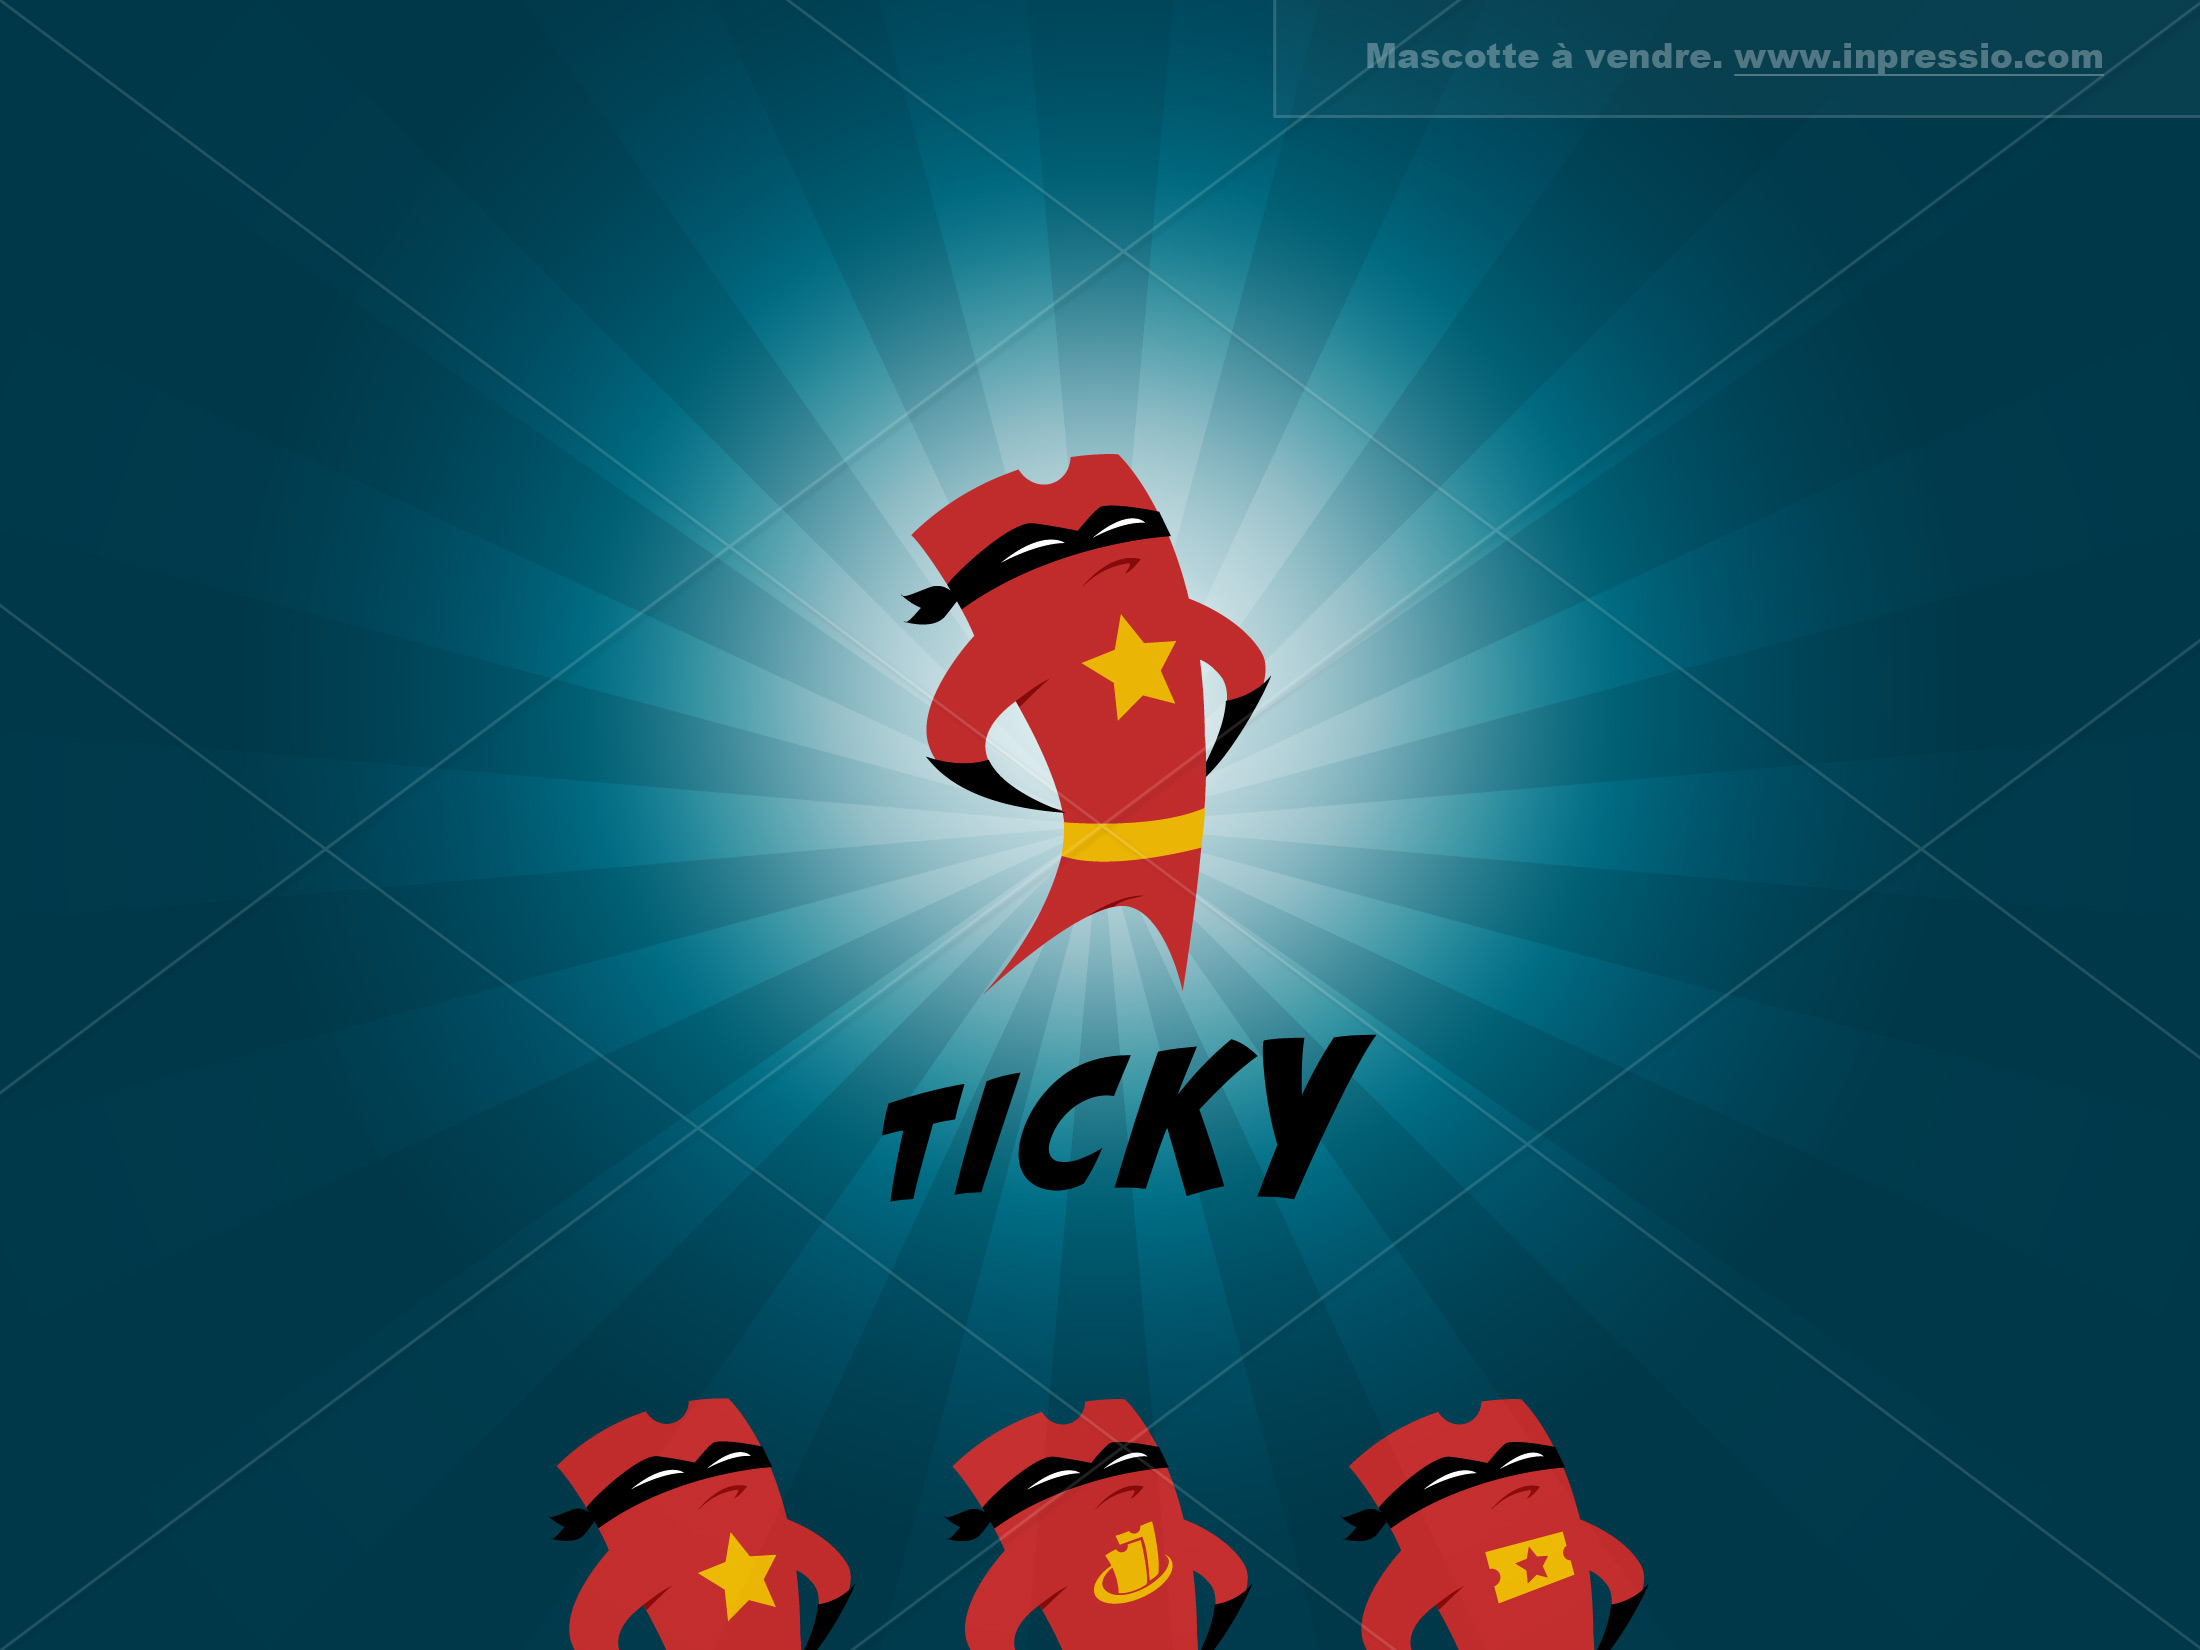 Ticky - Mascotte à vendre